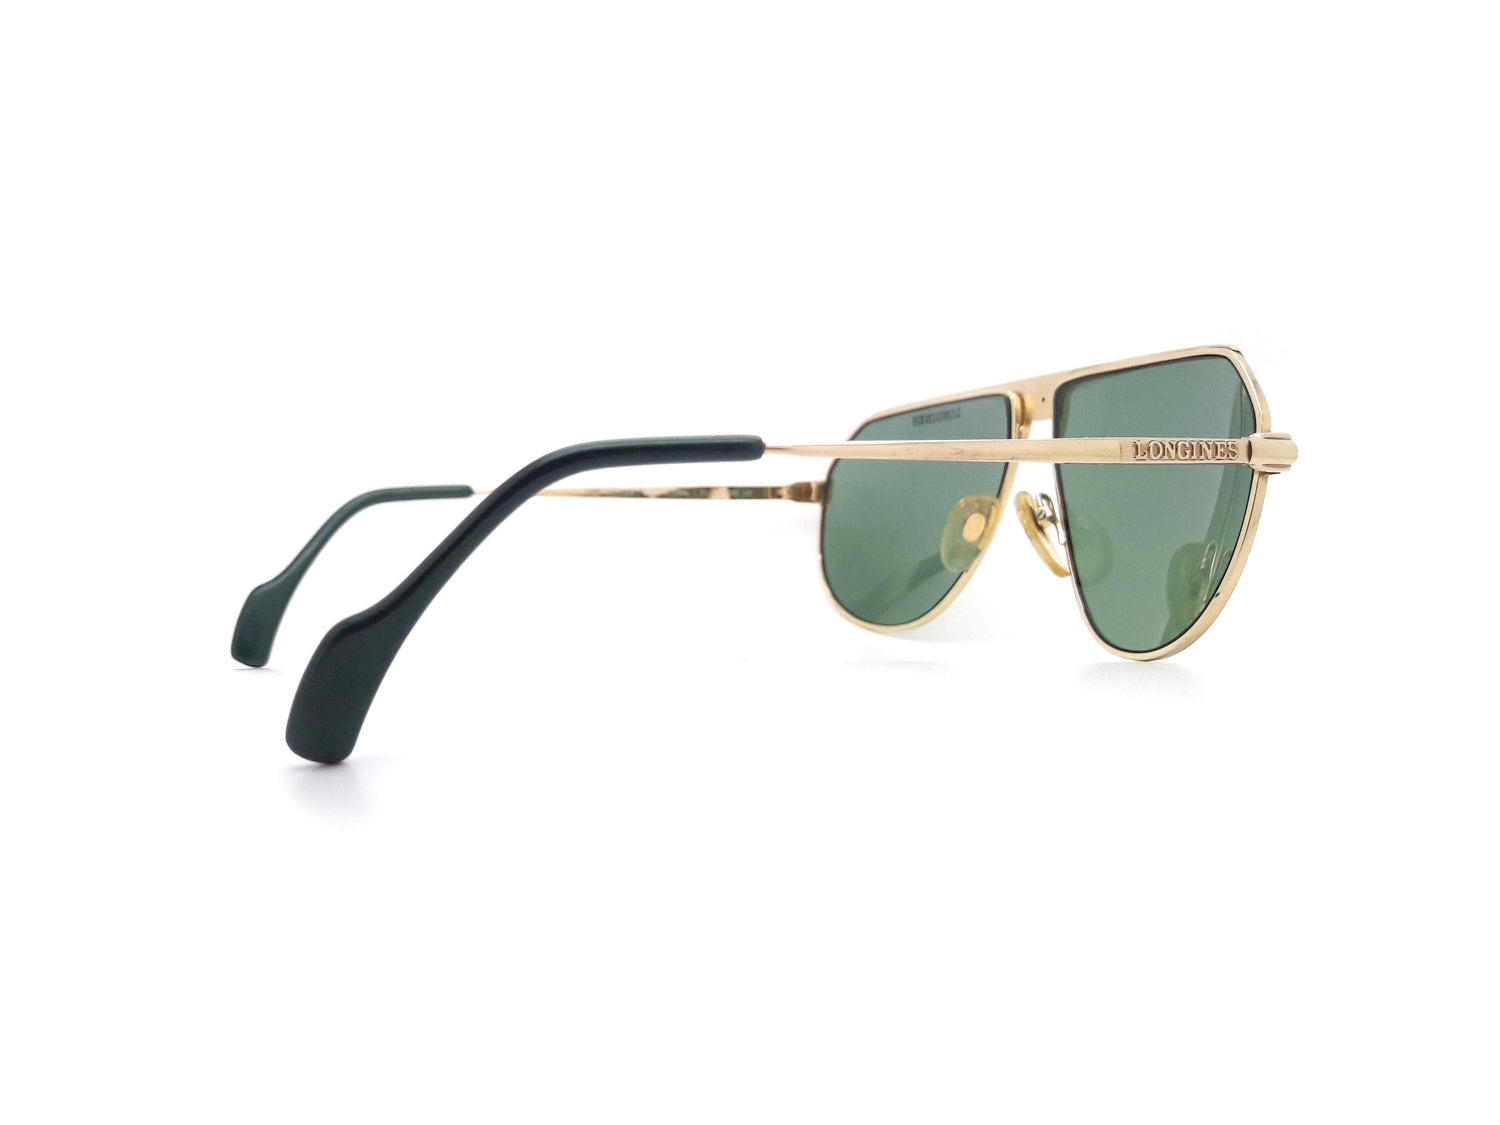 Longines C151/0551 003 Vintage Sunglasses – Ed & Sarna Vintage Eyewear